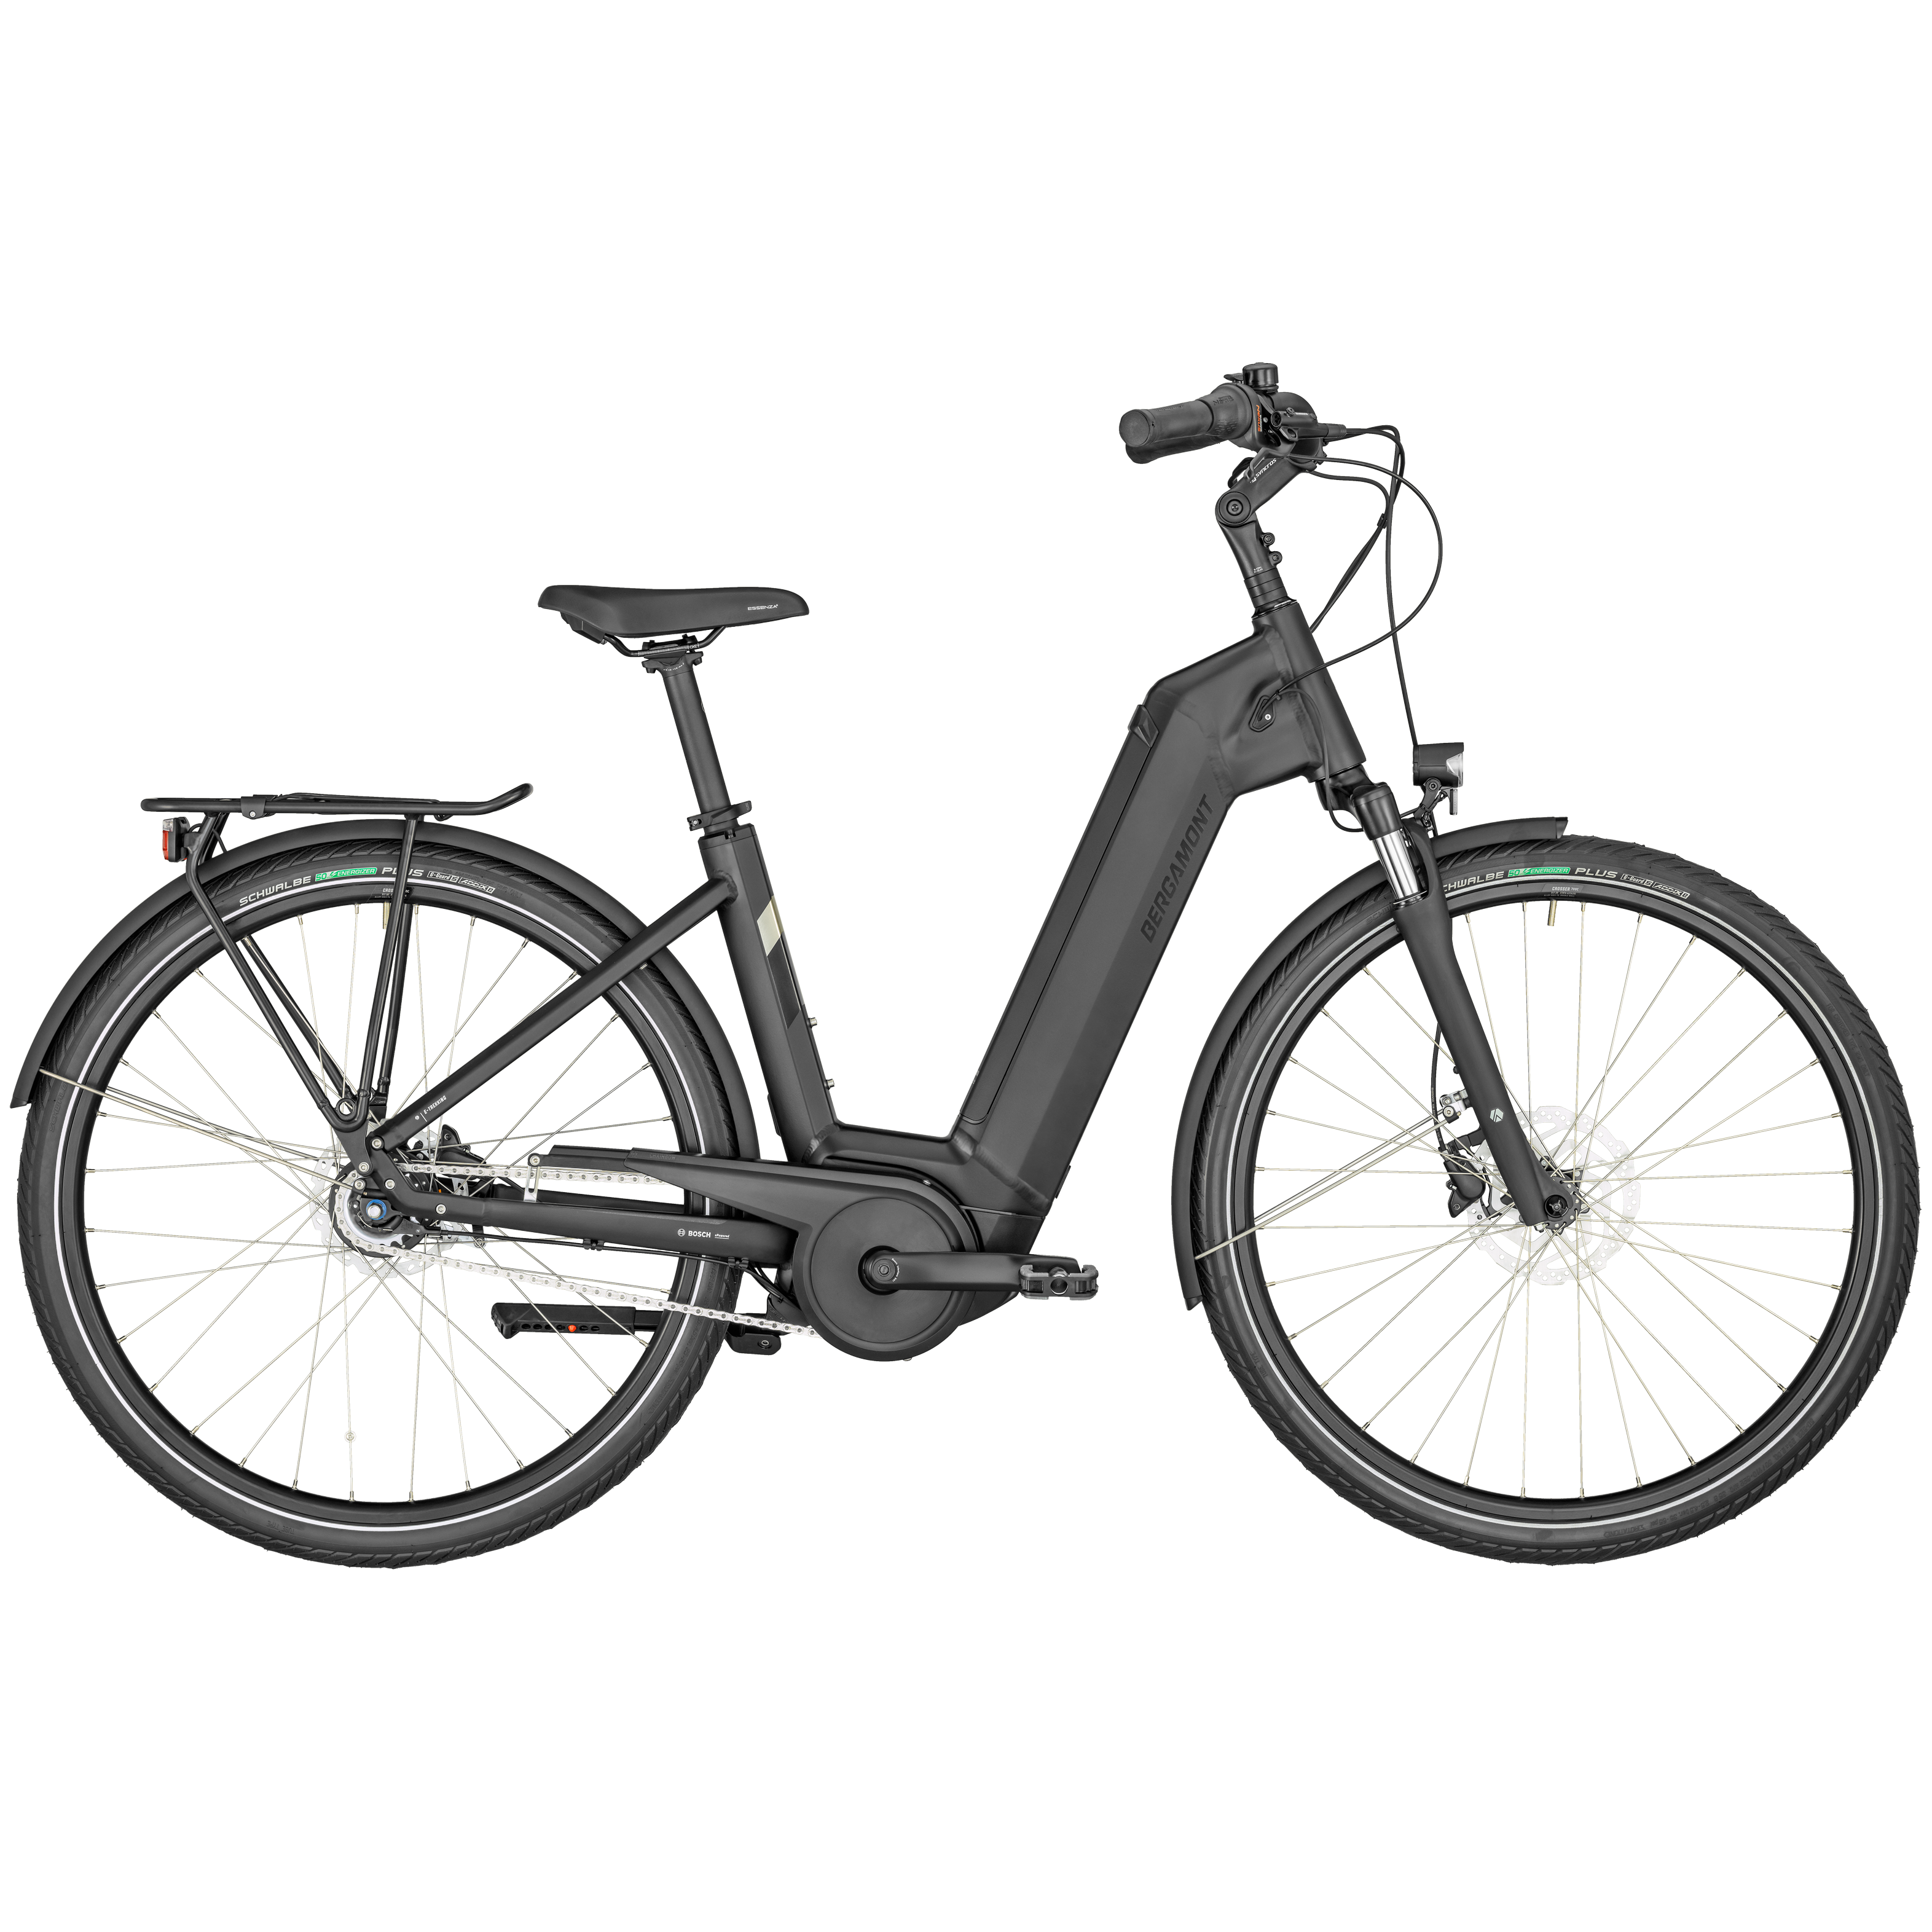 Bergamont E-Horizon N8, City E-Bike mit Rücktrittbremse und tiefem Einstieg. Farbe: weiß glänzend